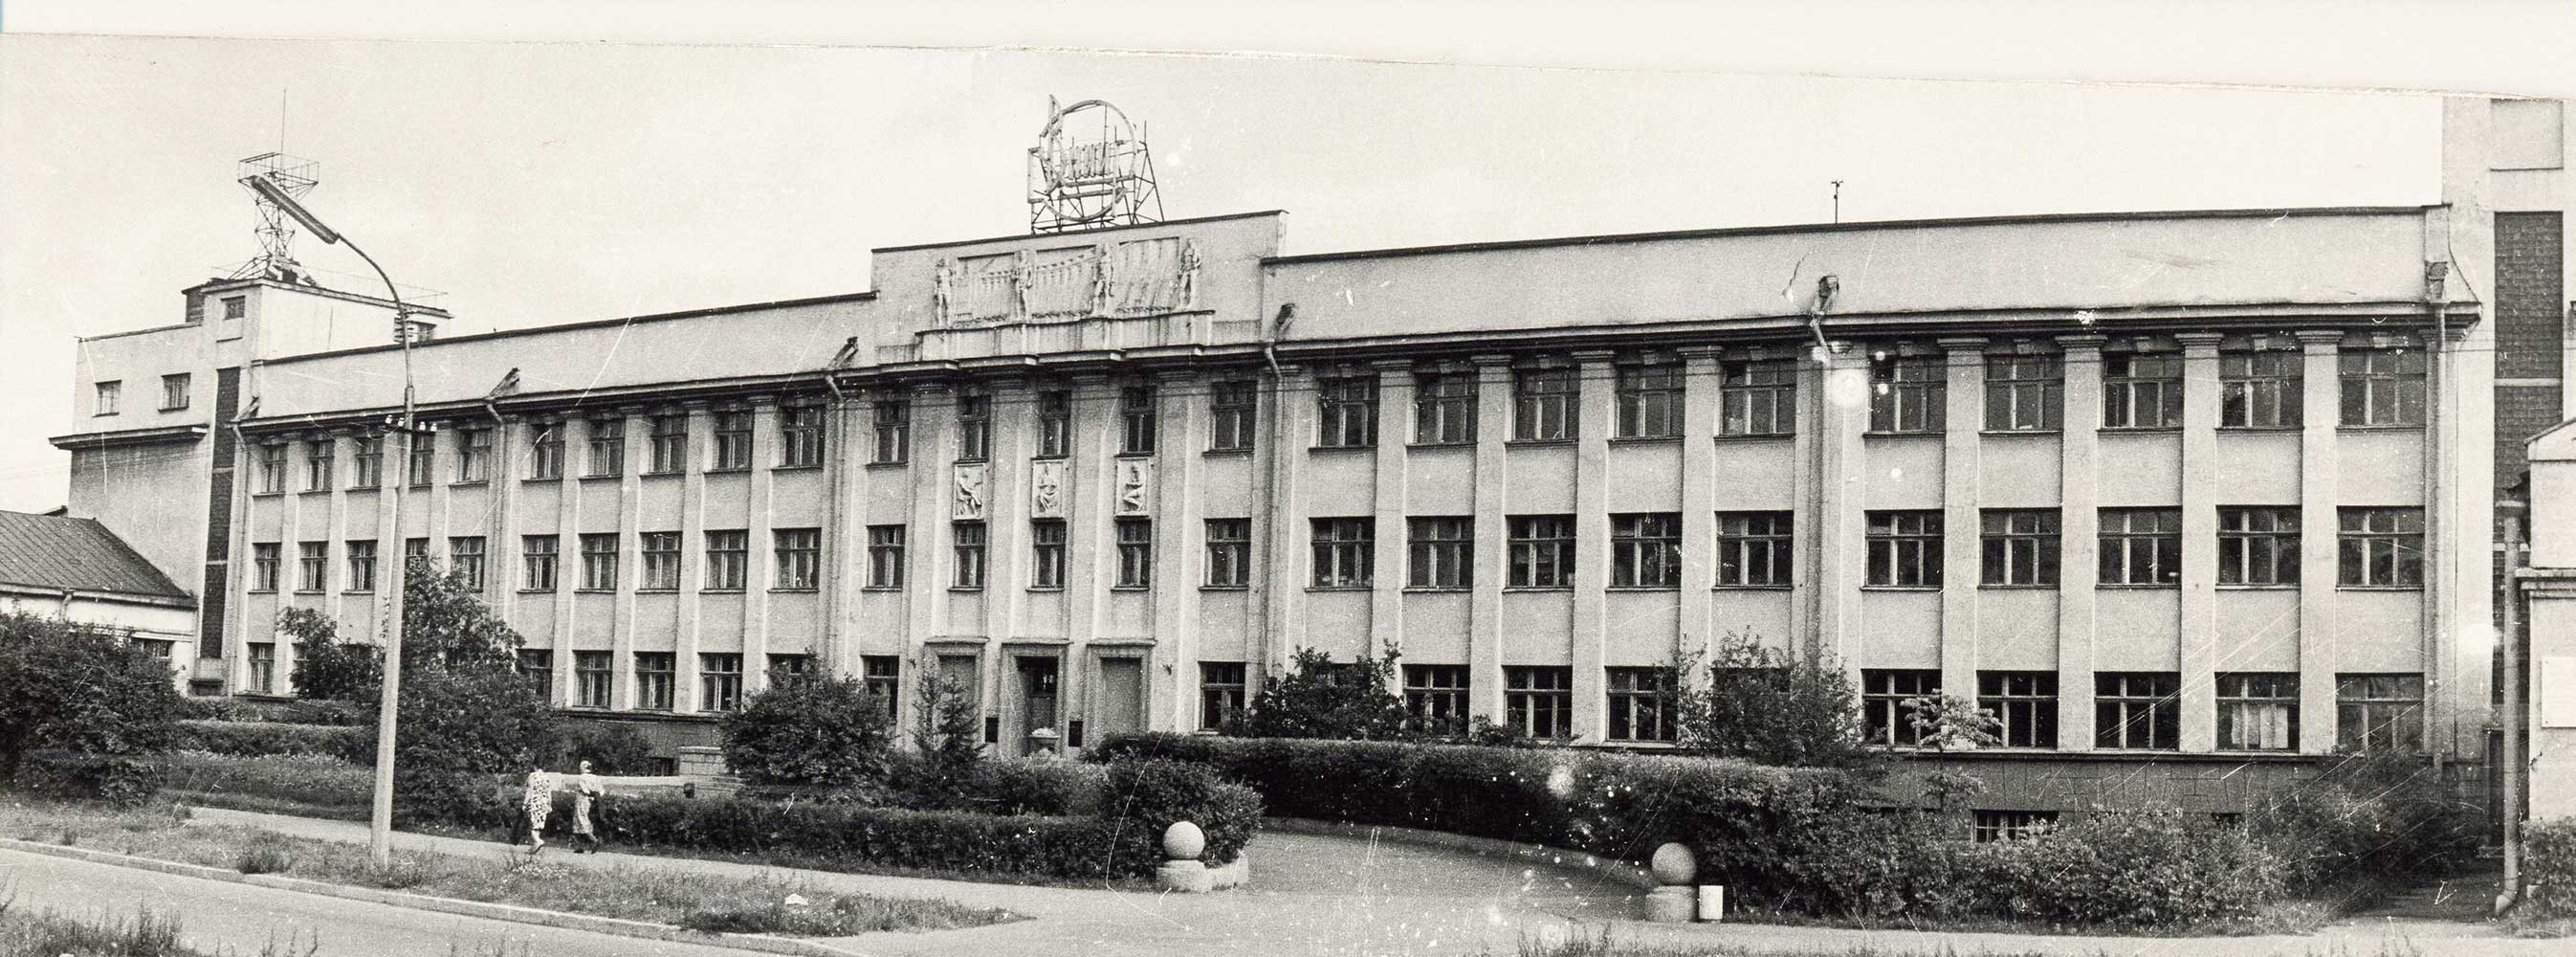 Здание ВНИИГ. 1932 год | VNIIG building, 1932